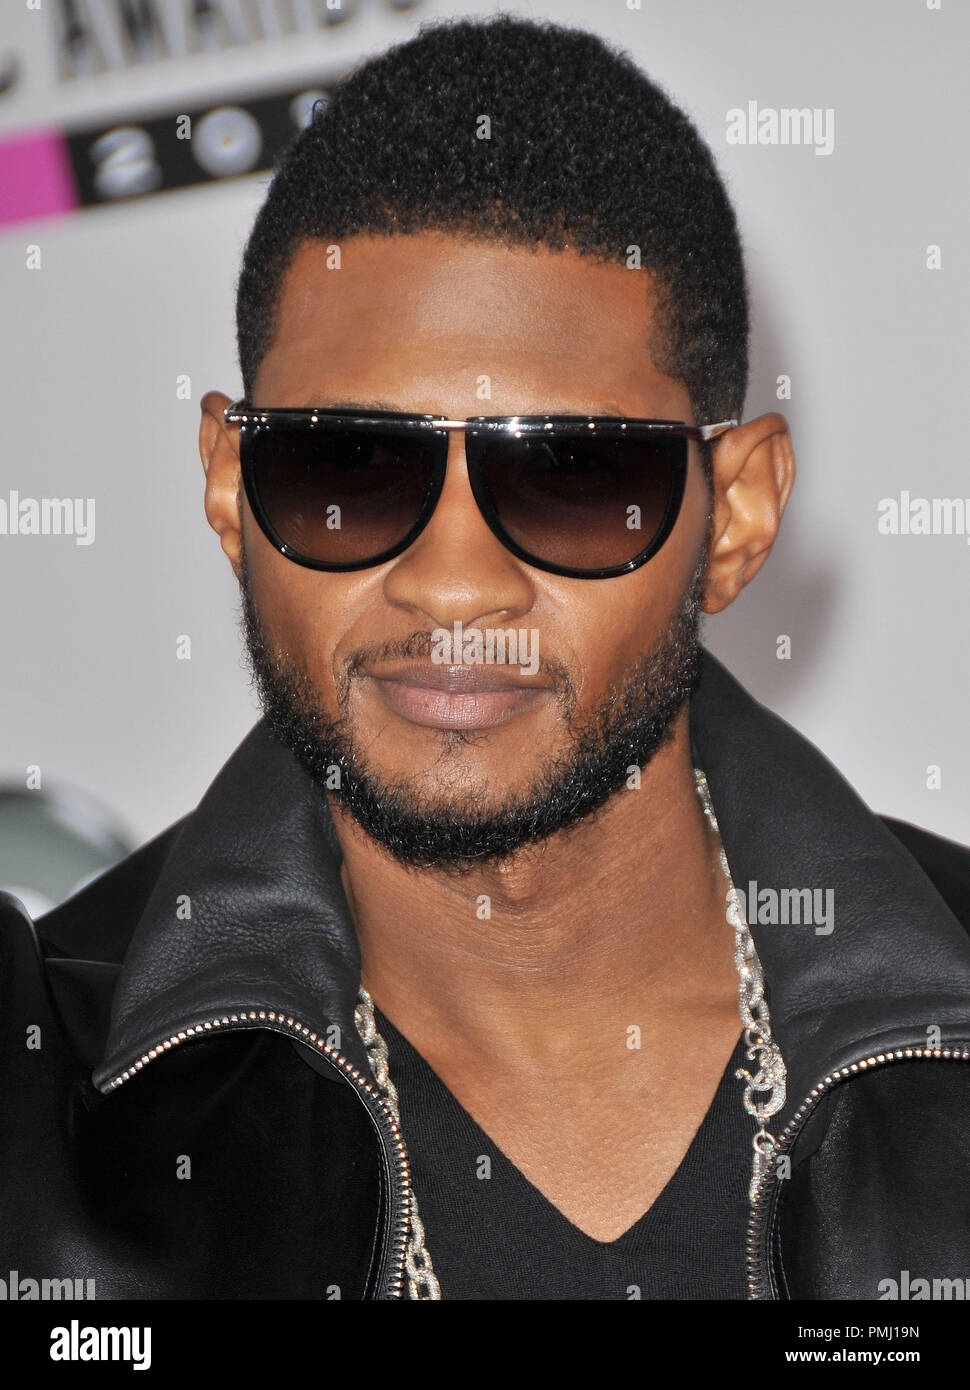 Usher bei den American Music Awards 2010 - Ankunft im Nokia Theatre L.A. statt Leben in Los Angeles, CA. Die Veranstaltung fand am Sonntag, 21. November 2010 statt. Foto von PRPP Pacific Rim Foto Presse. Datei Referenz # 30722 285 PLX nur für redaktionelle Verwendung - Alle Rechte vorbehalten Stockfoto